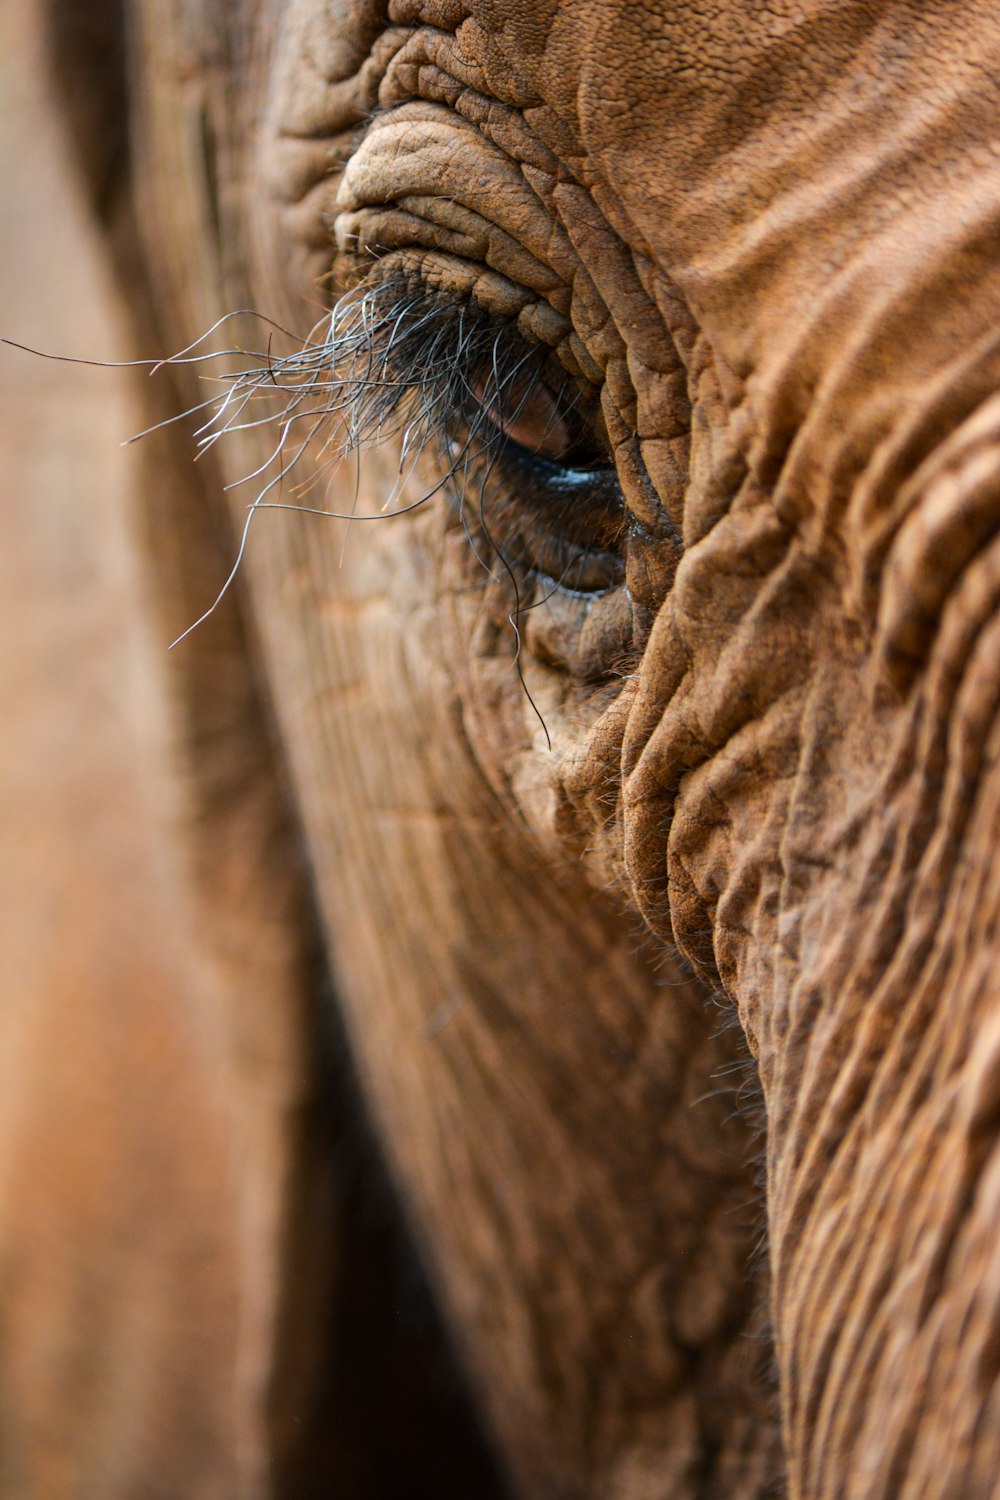 brown elephant